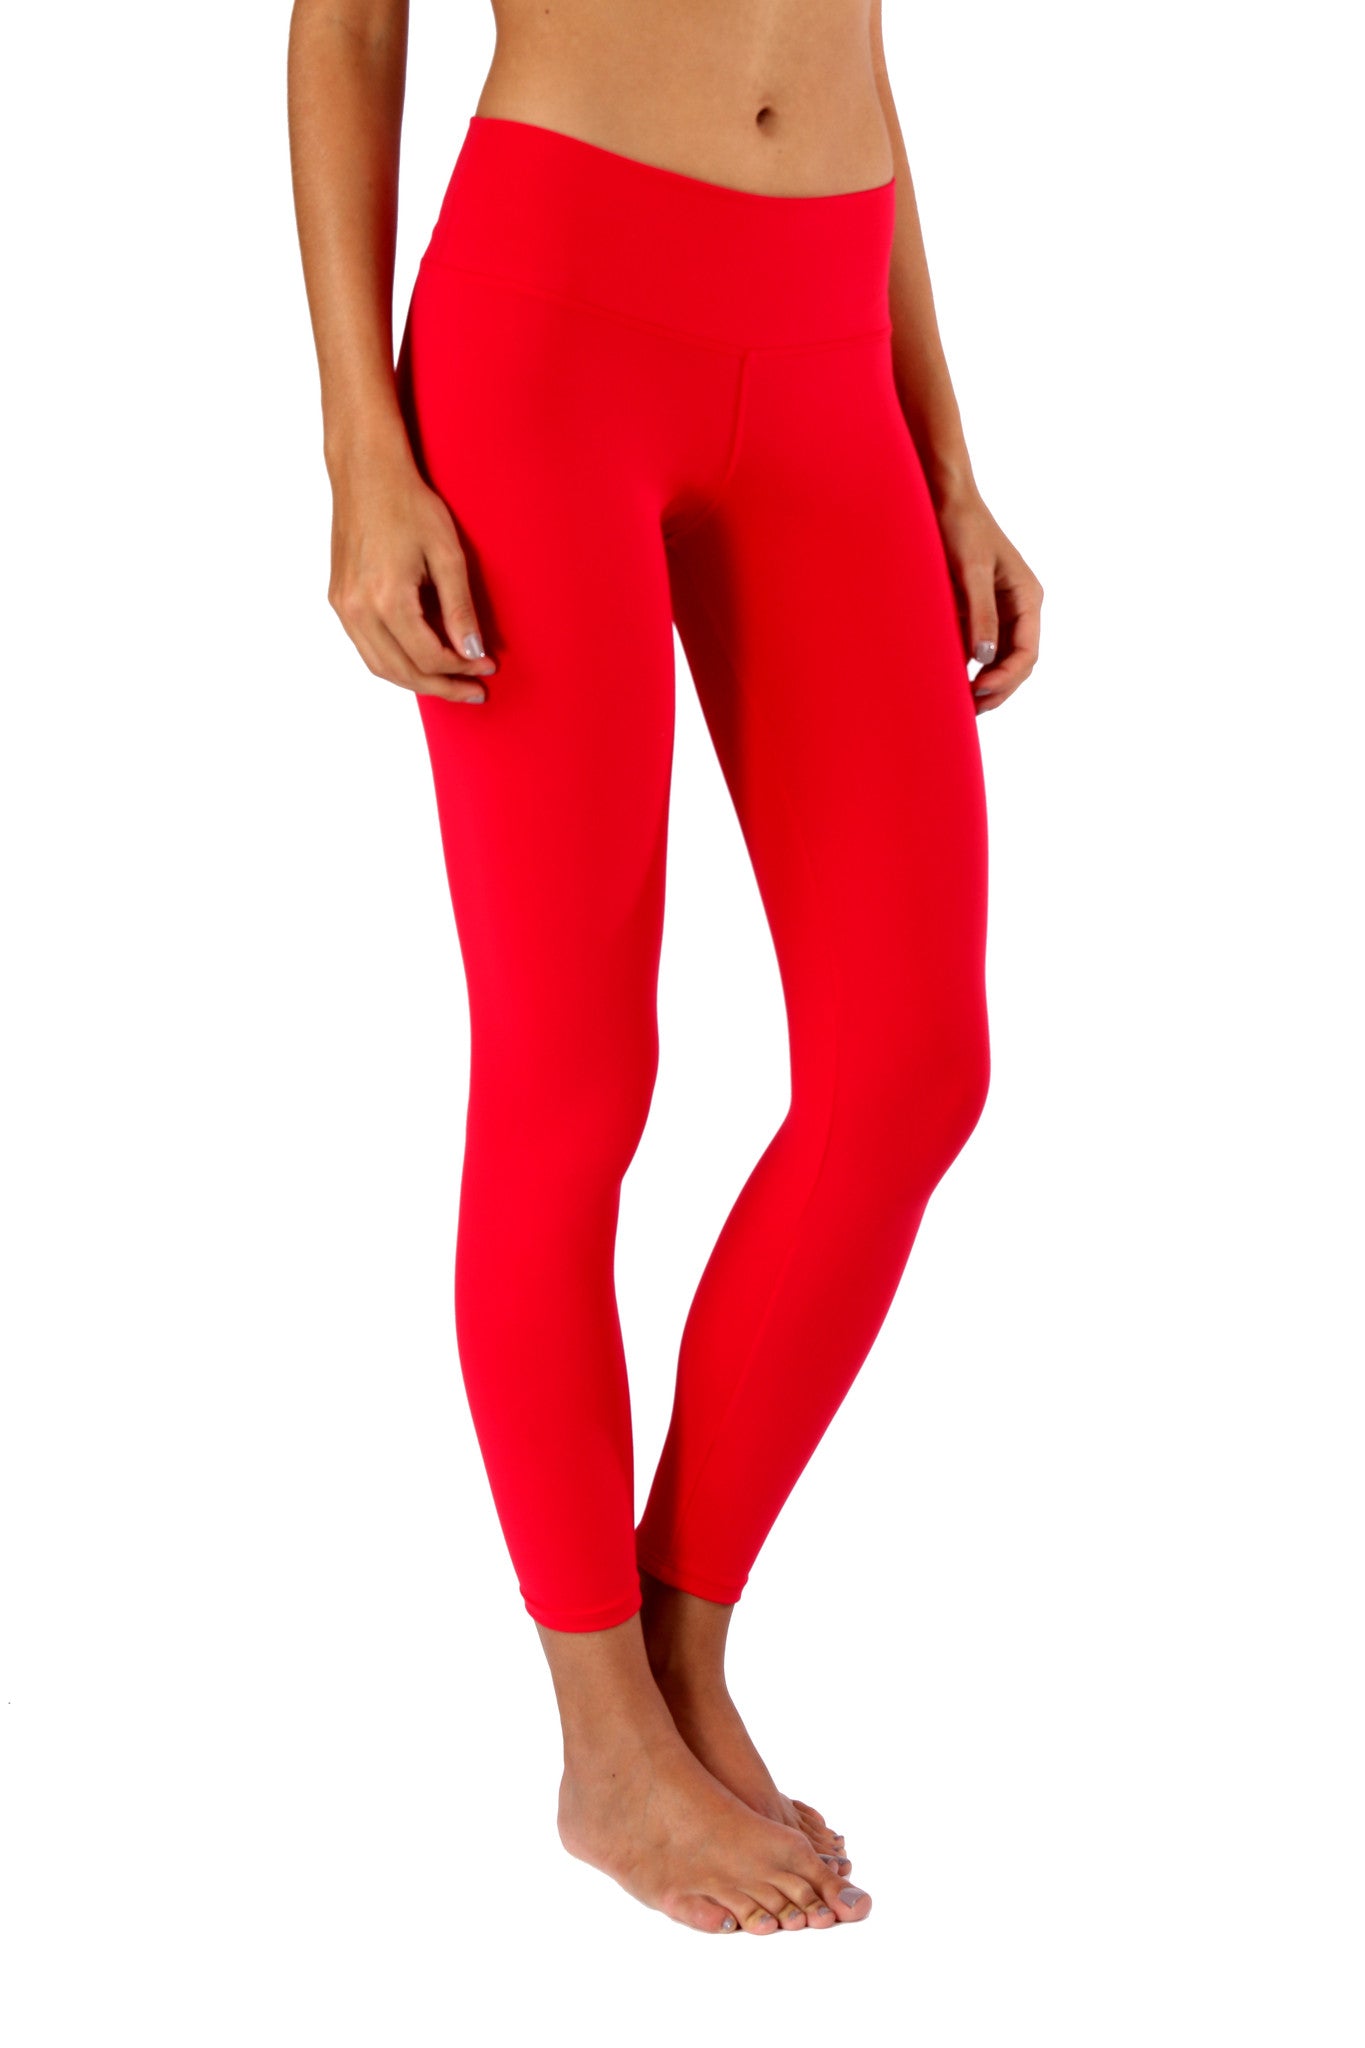 Red Legging | Sadhana Clothing